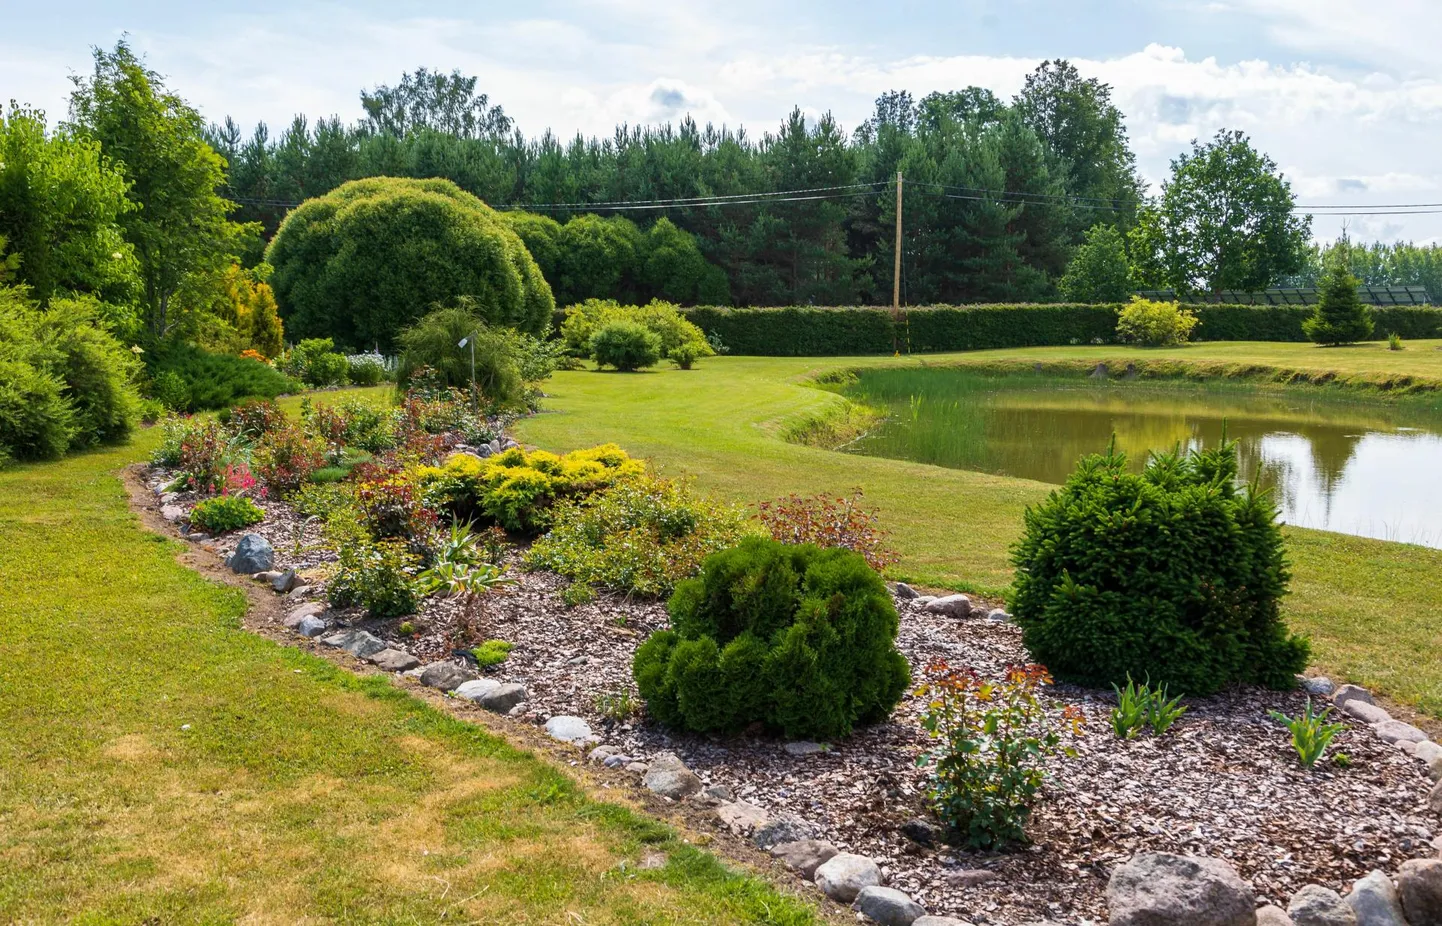 Сад красивого загородного дома Янели Кеерд и Урмаса Аллеви украшает построенный там пруд.